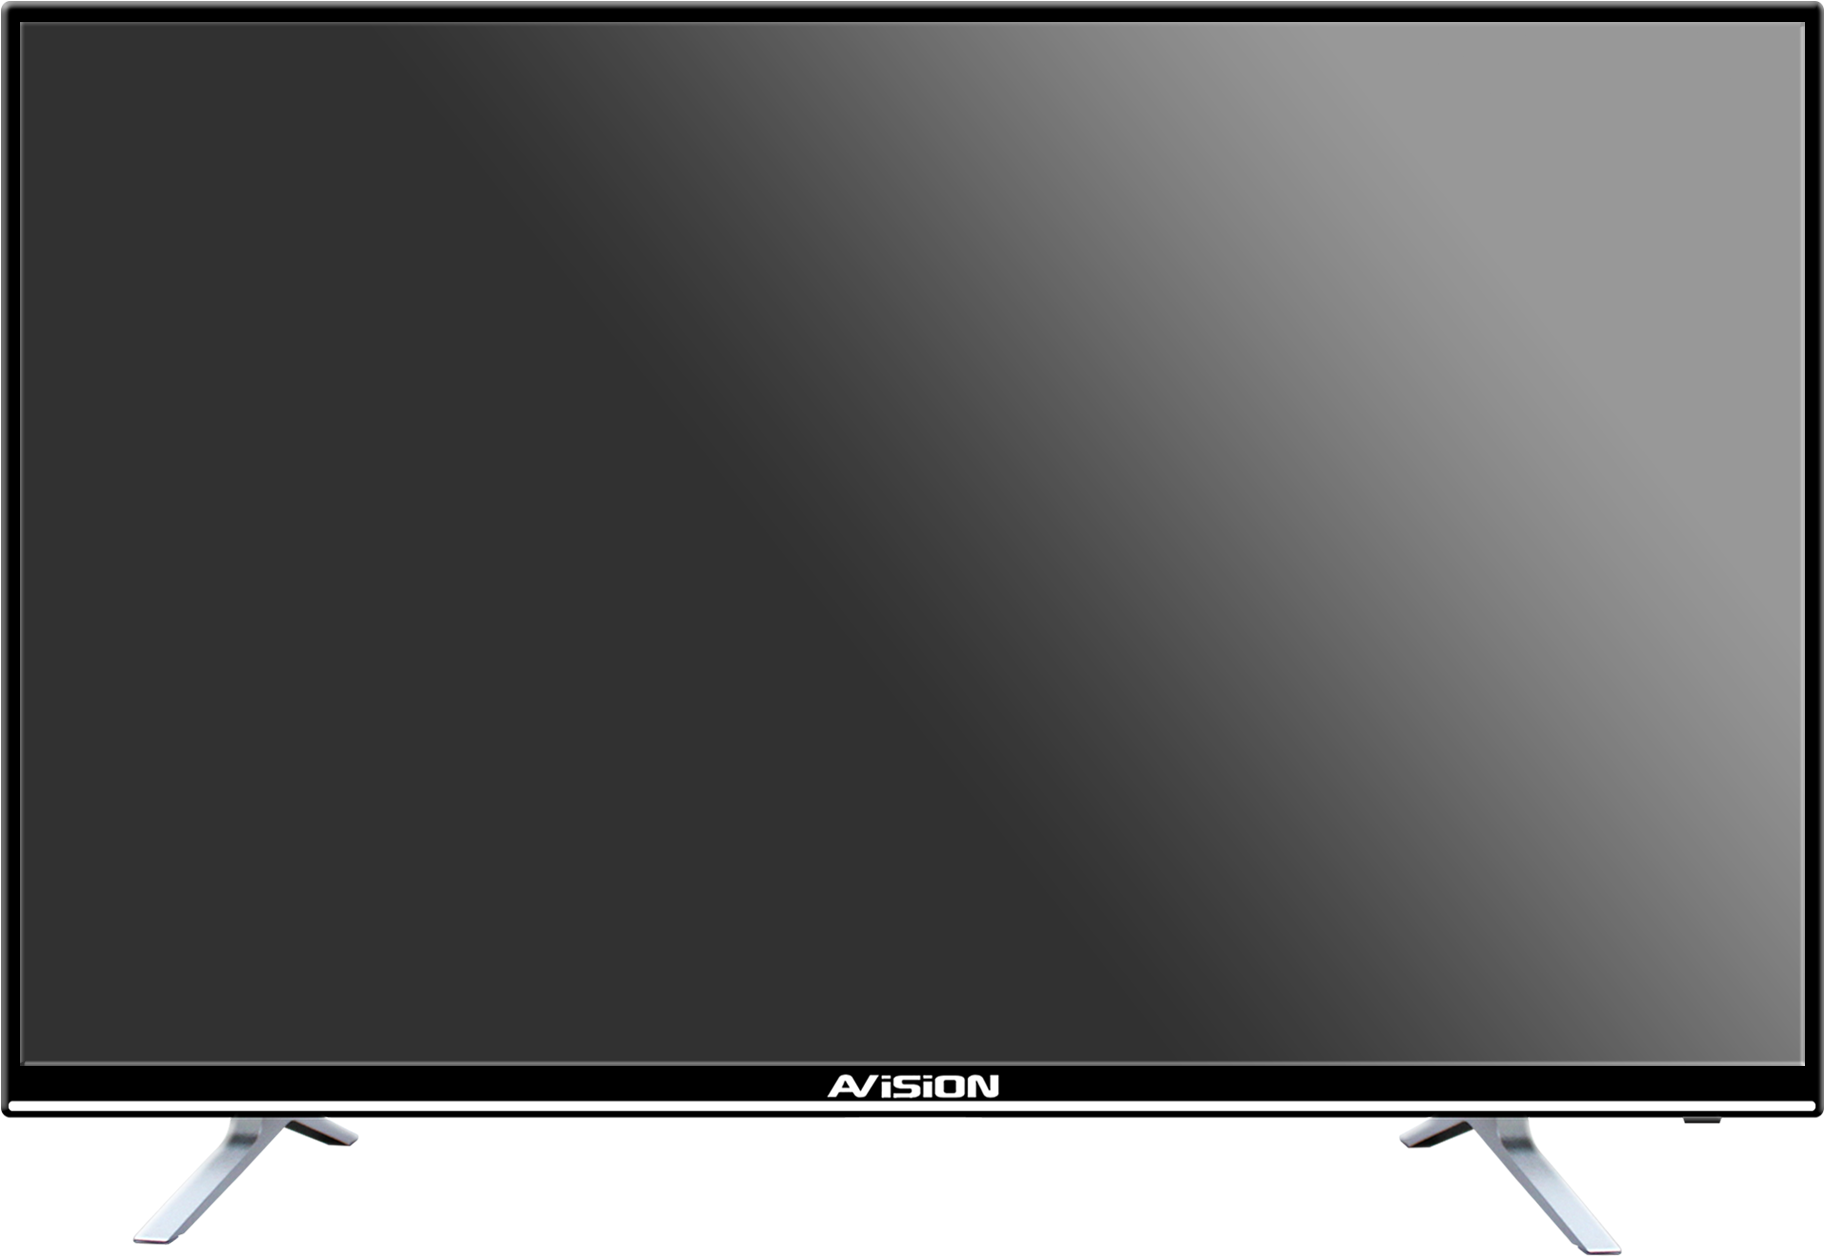 Product Details Of Avision 43″ Smart Digital Led Tv - Led-backlit Lcd Display Clipart (2000x1318), Png Download